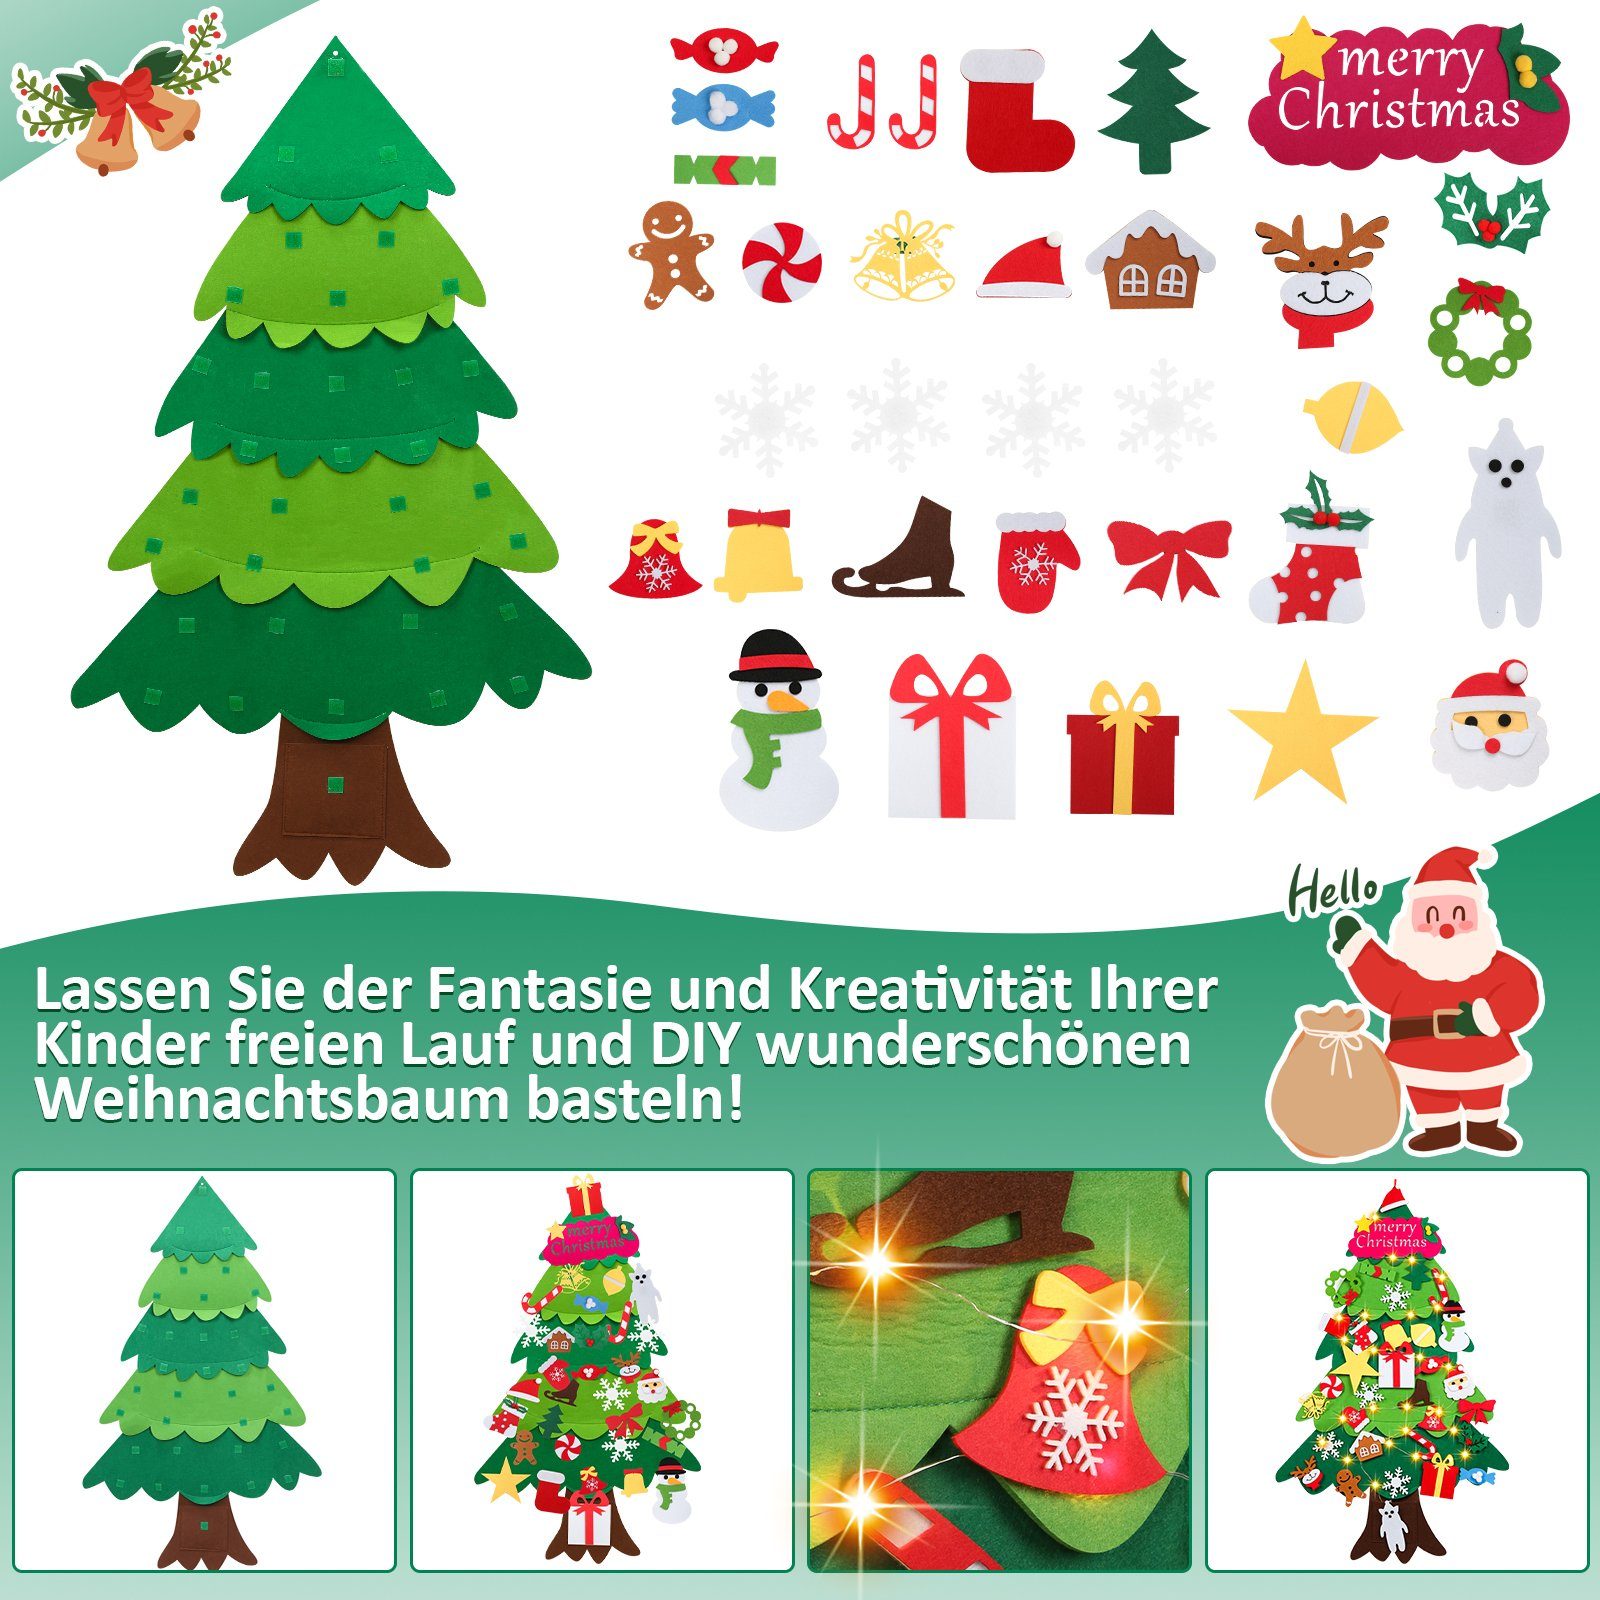 Filz Weihnachtsbaum DIY Weihnachtsbaum Christmas Kinder Künstlicher Künstlicher Gimisgu Weihnachtsbaum